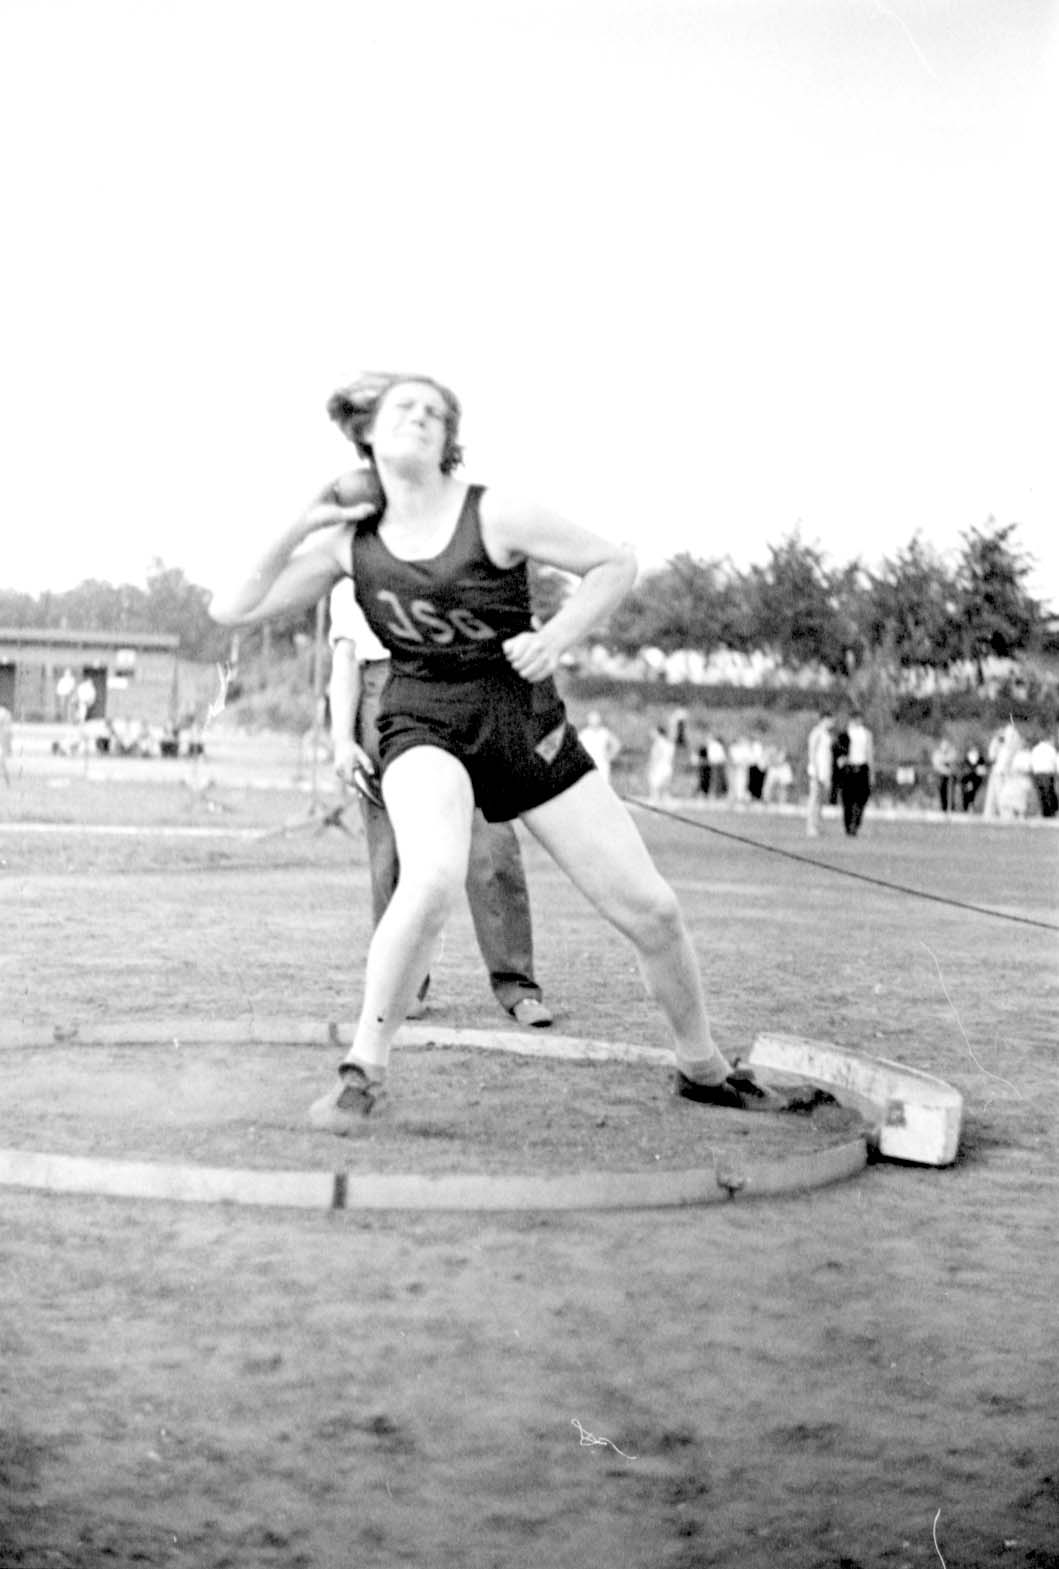 Berlin, 4.7.1937, Ingeborg Mello, Siegerin im Kugelstoßen bei einem jüdischen Sportturnier